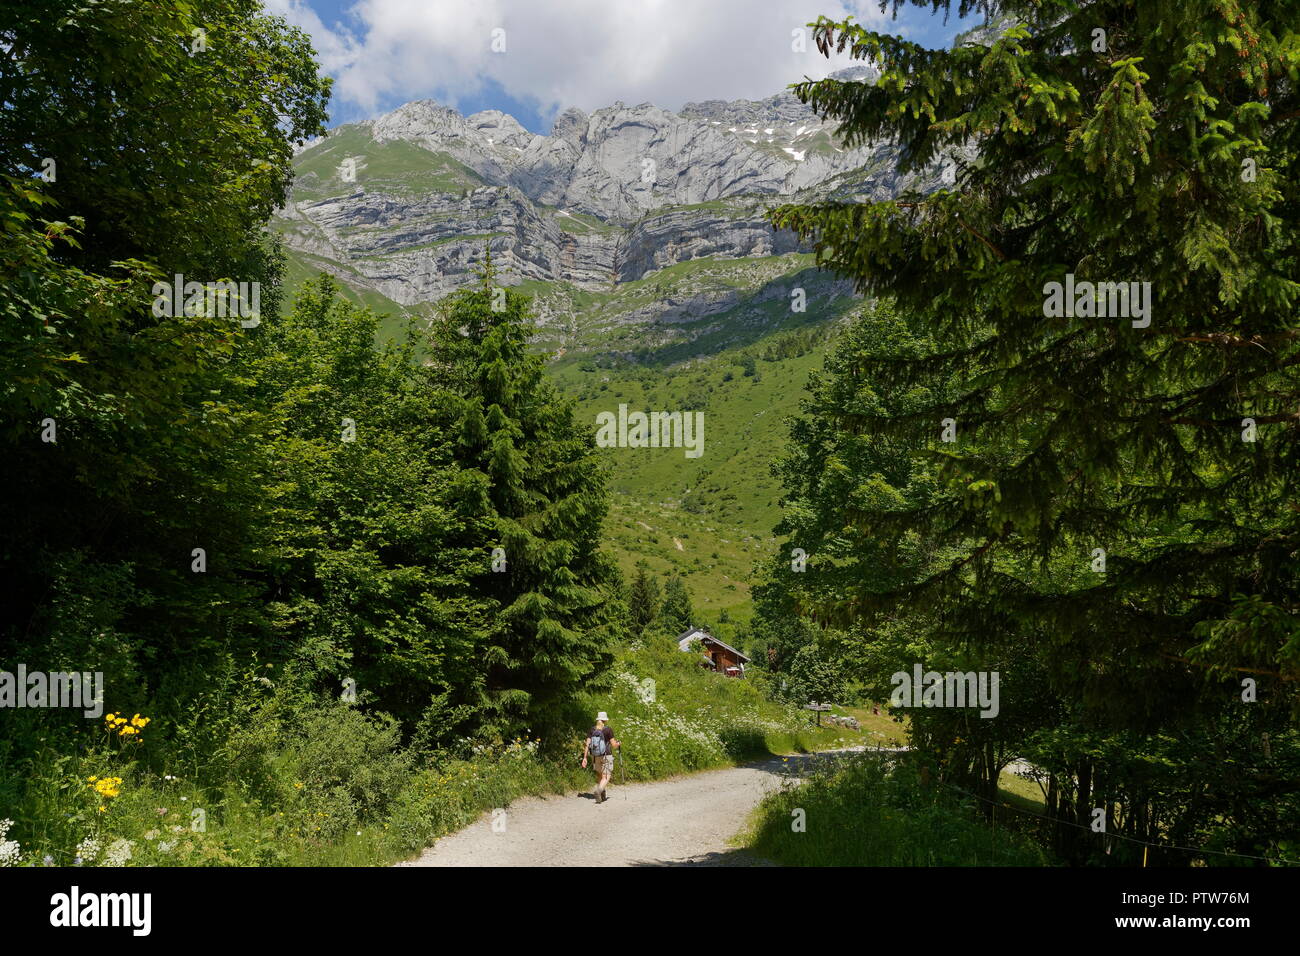 Weibliche Wanderer auf dem Weg zu einem weit entfernten Restaurant auf der off road Tracks in den Tälern der französischen Alpen nr Montmin Frankreich Stockfoto